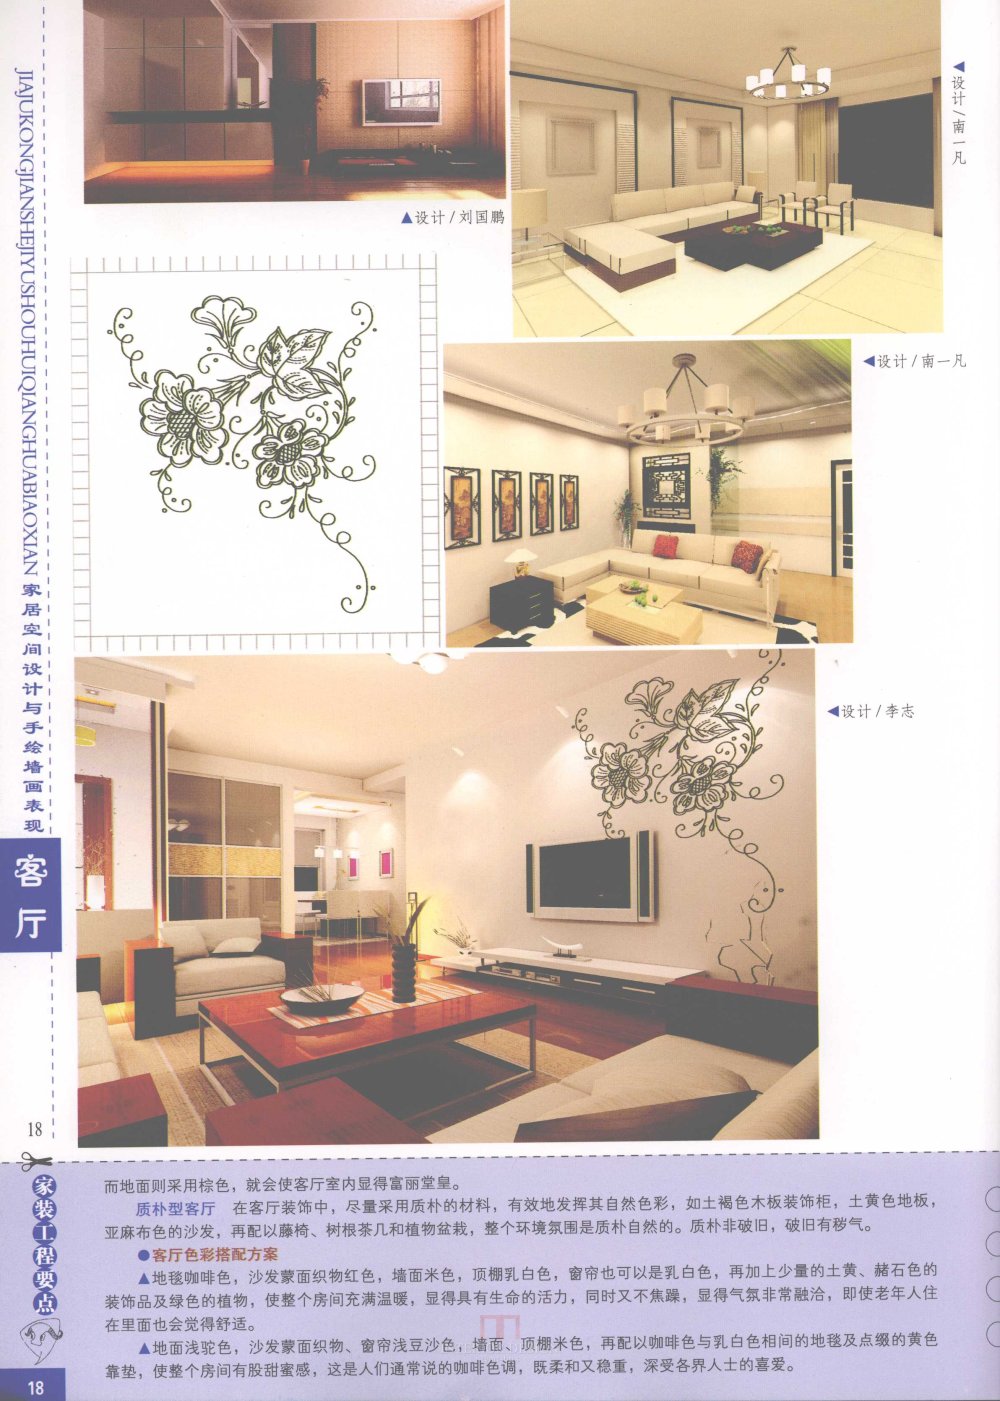 家居空间设计与手绘墙画表现客厅_家居空间设计与手绘墙画表现客厅-20.jpg